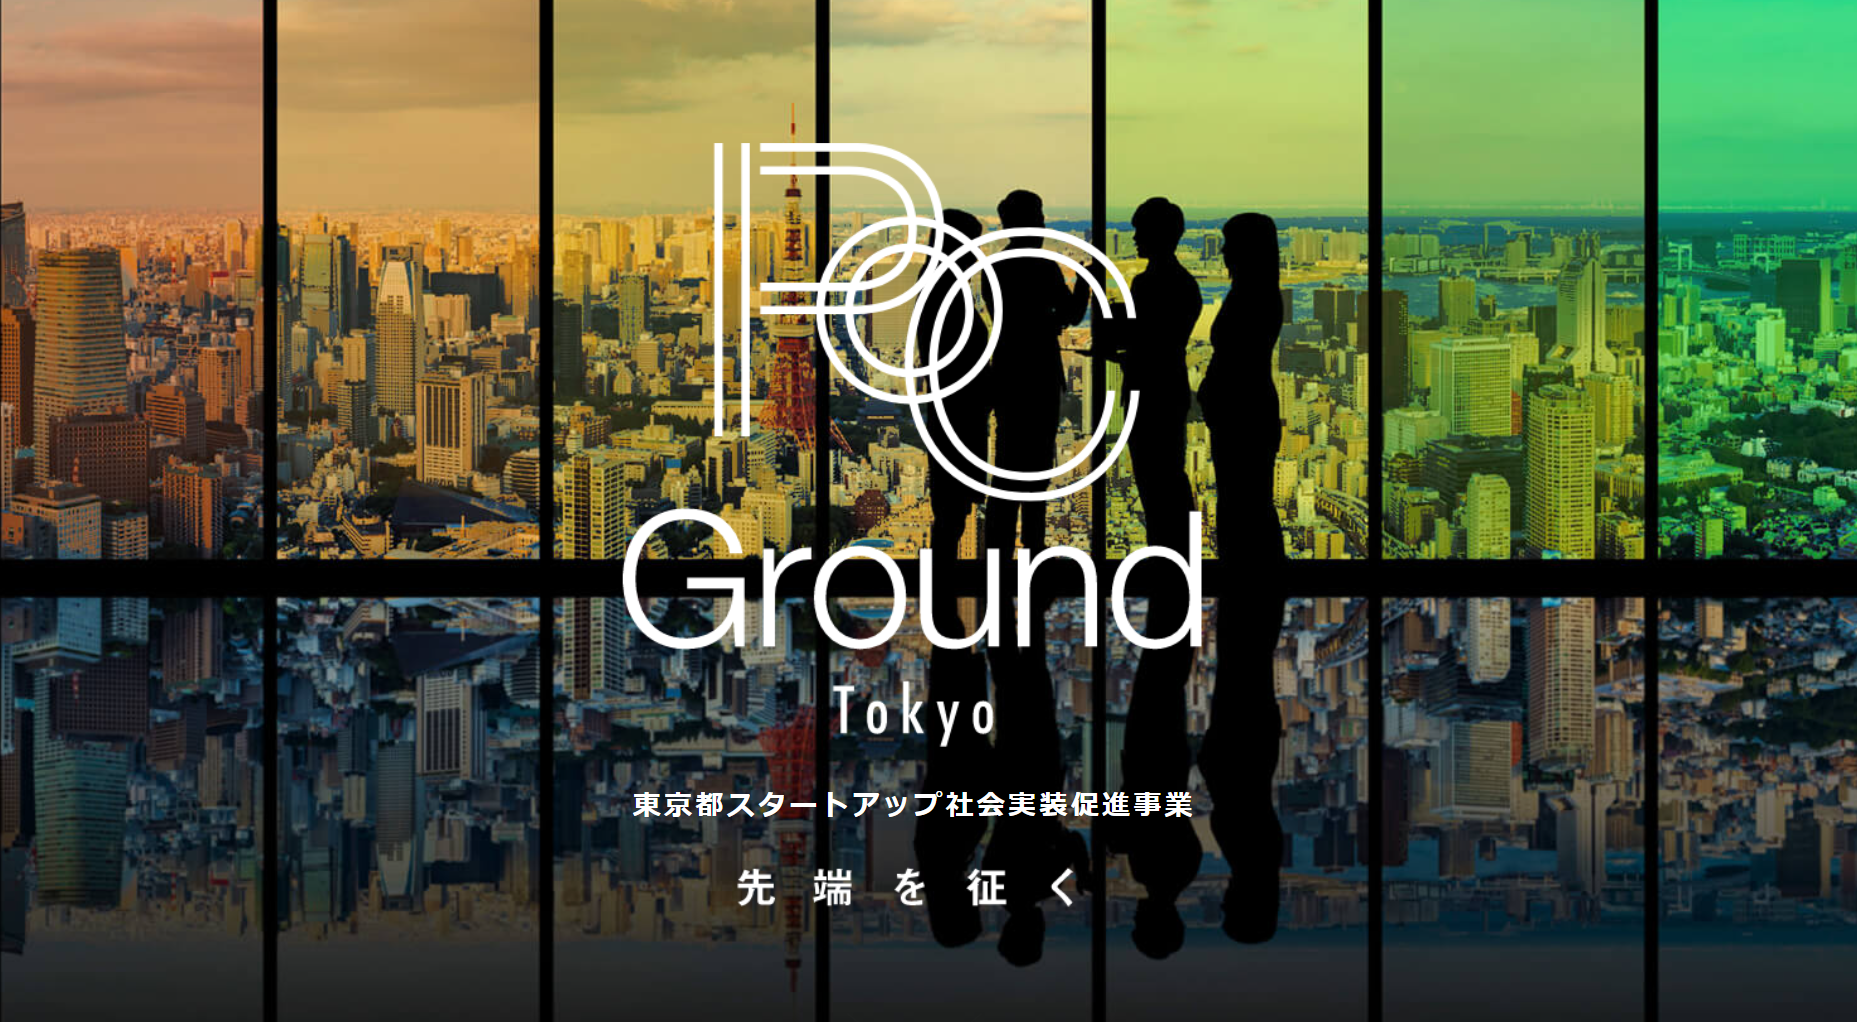 2023年度 PoC Ground Tokyo書類審査通過企業 決定